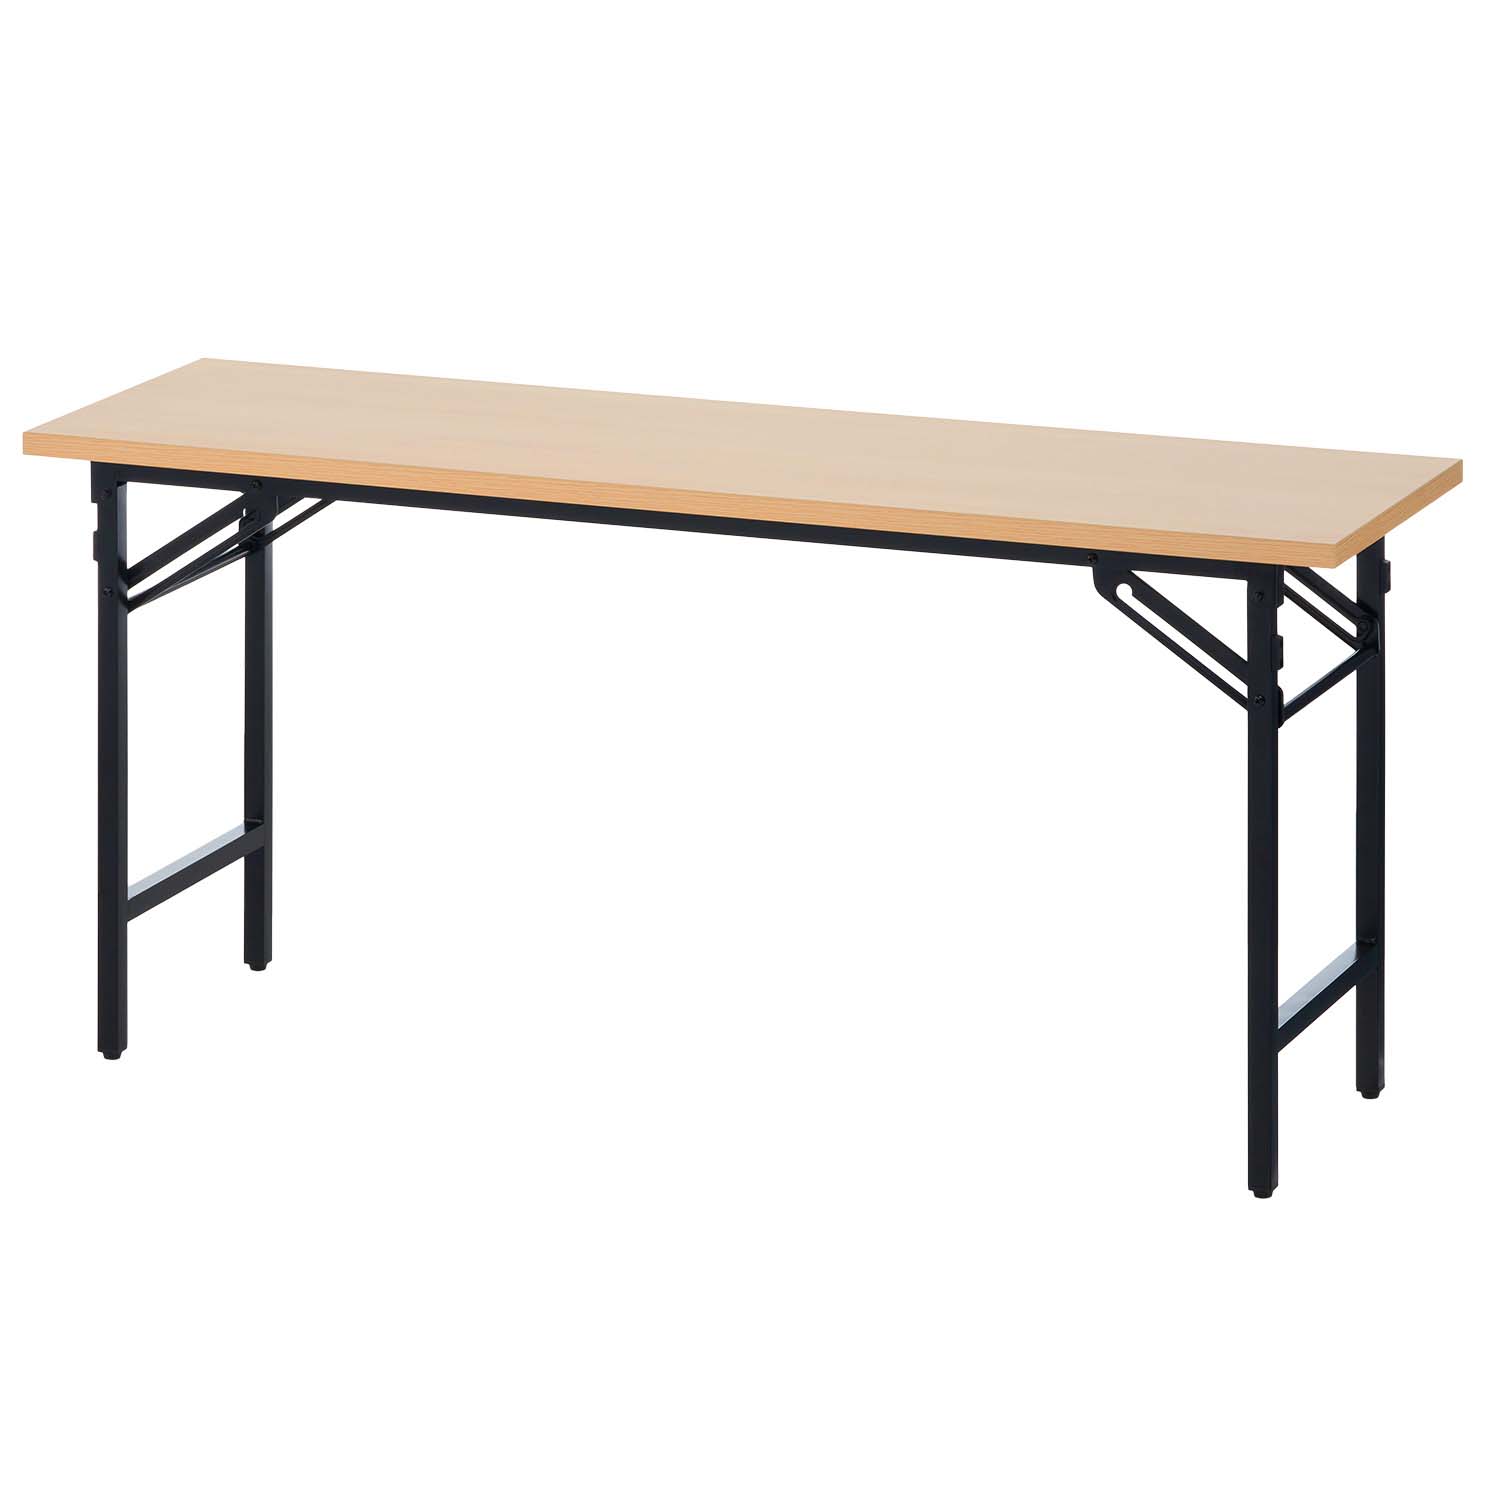 法人様限定 会議用テーブル 折りたたみテーブル 棚無し 幅1500×奥行450